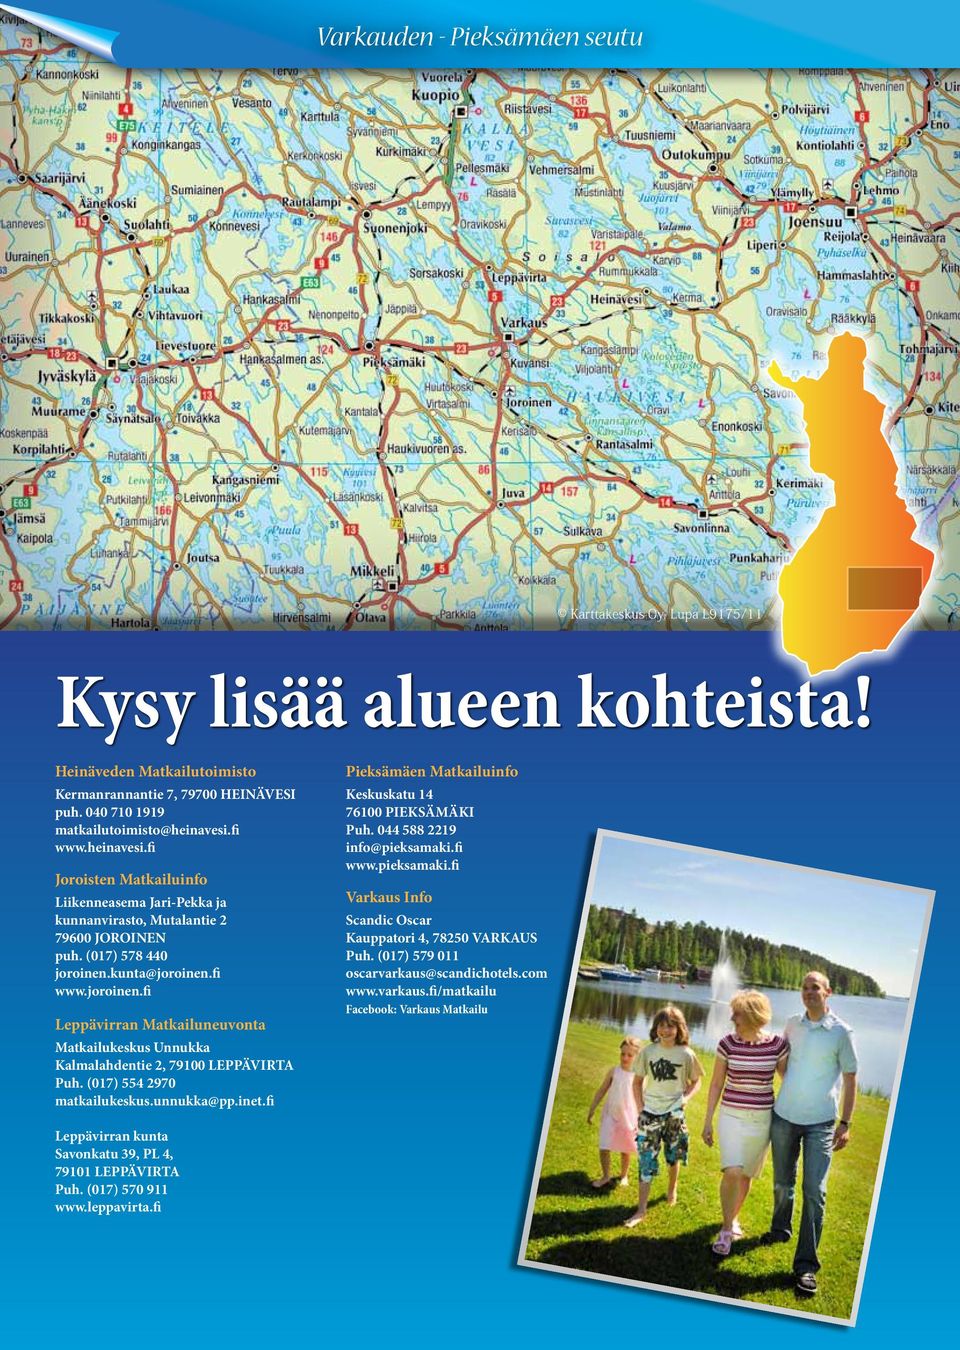 kunta@joroinen.fi www.joroinen.fi Leppävirran Matkailuneuvonta Matkailukeskus Unnukka Kalmalahdentie 2, 79100 Puh. (017) 554 2970 matkailukeskus.unnukka@pp.inet.